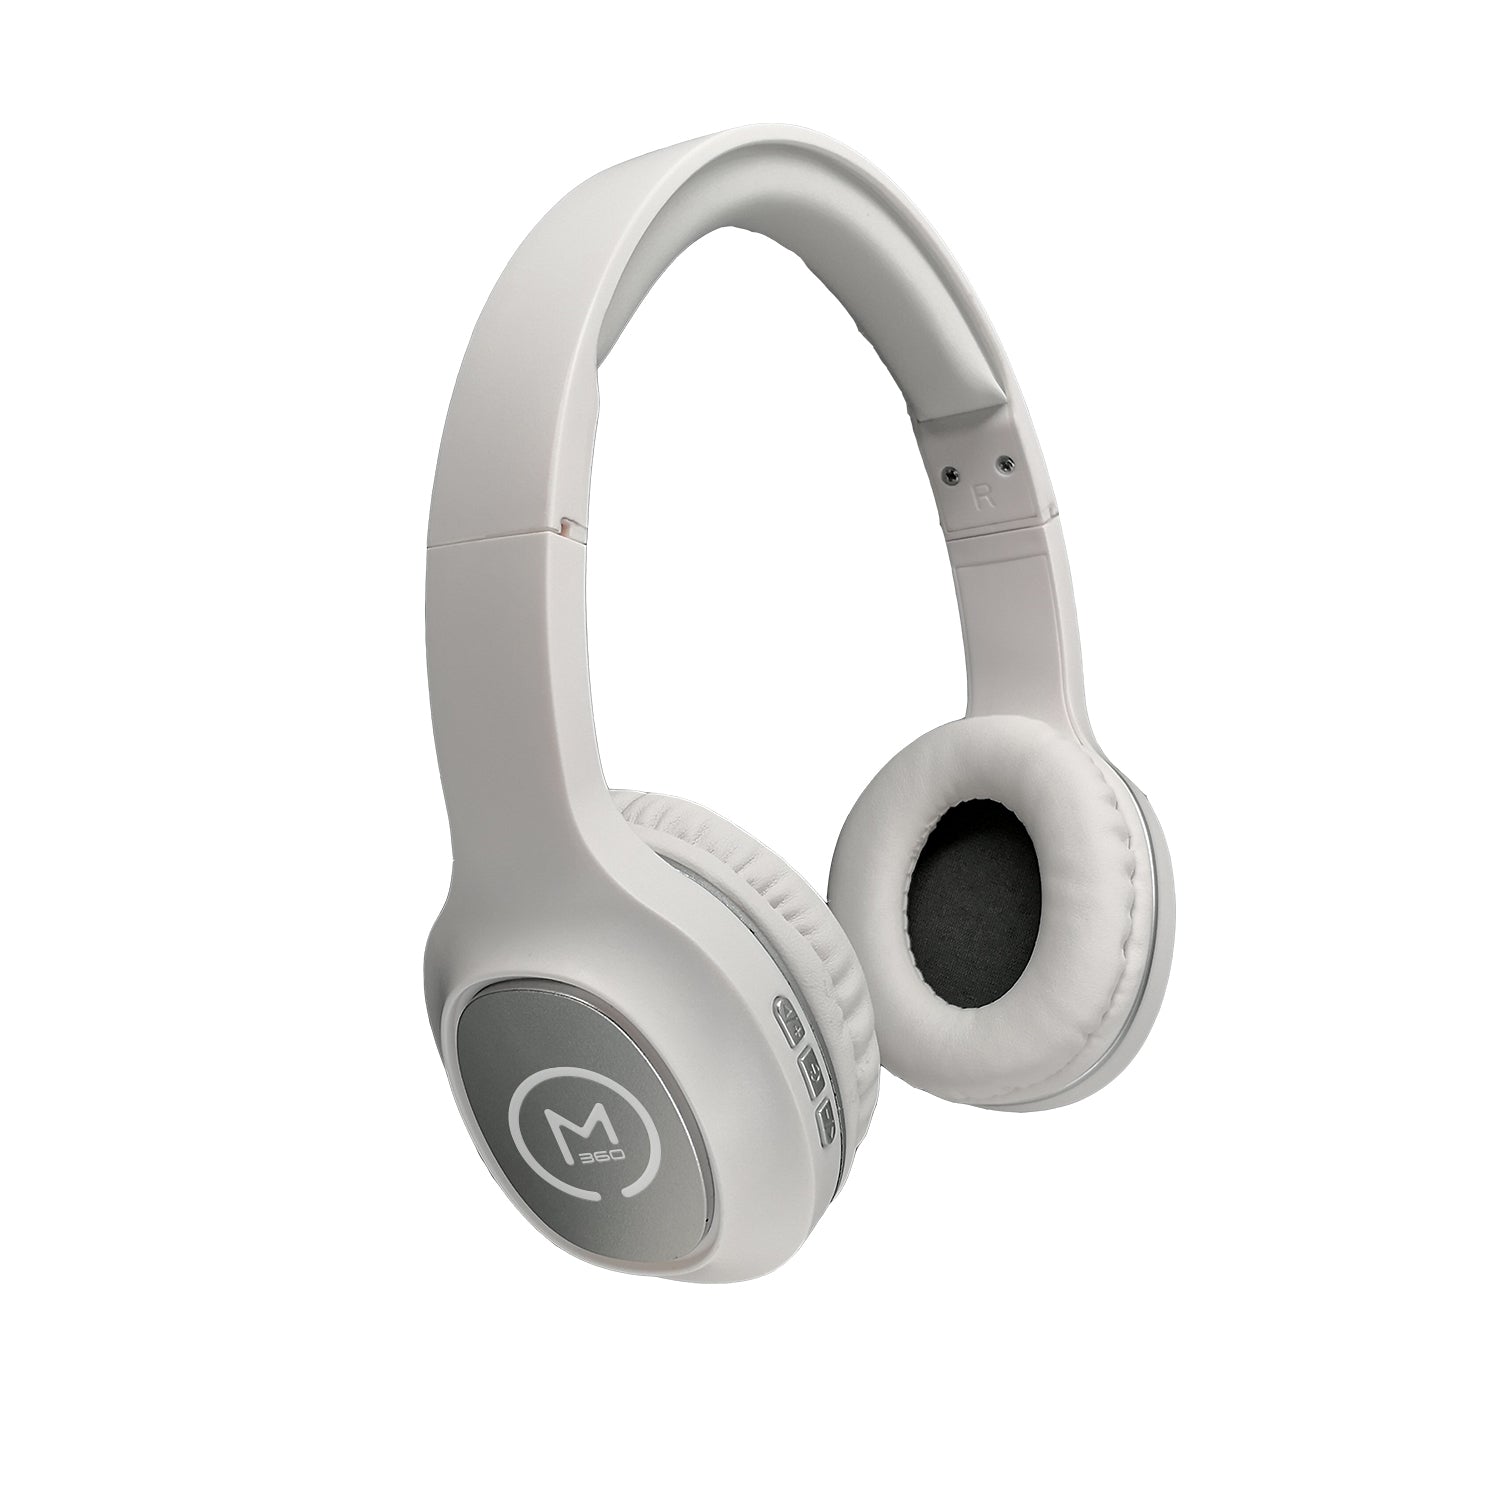 Morpheus 360 Tremors - Auriculares Bluetooth | Micrófono incorporado |  Auriculares inalámbricos | Auriculares para juegos | Auriculares en la  oreja 